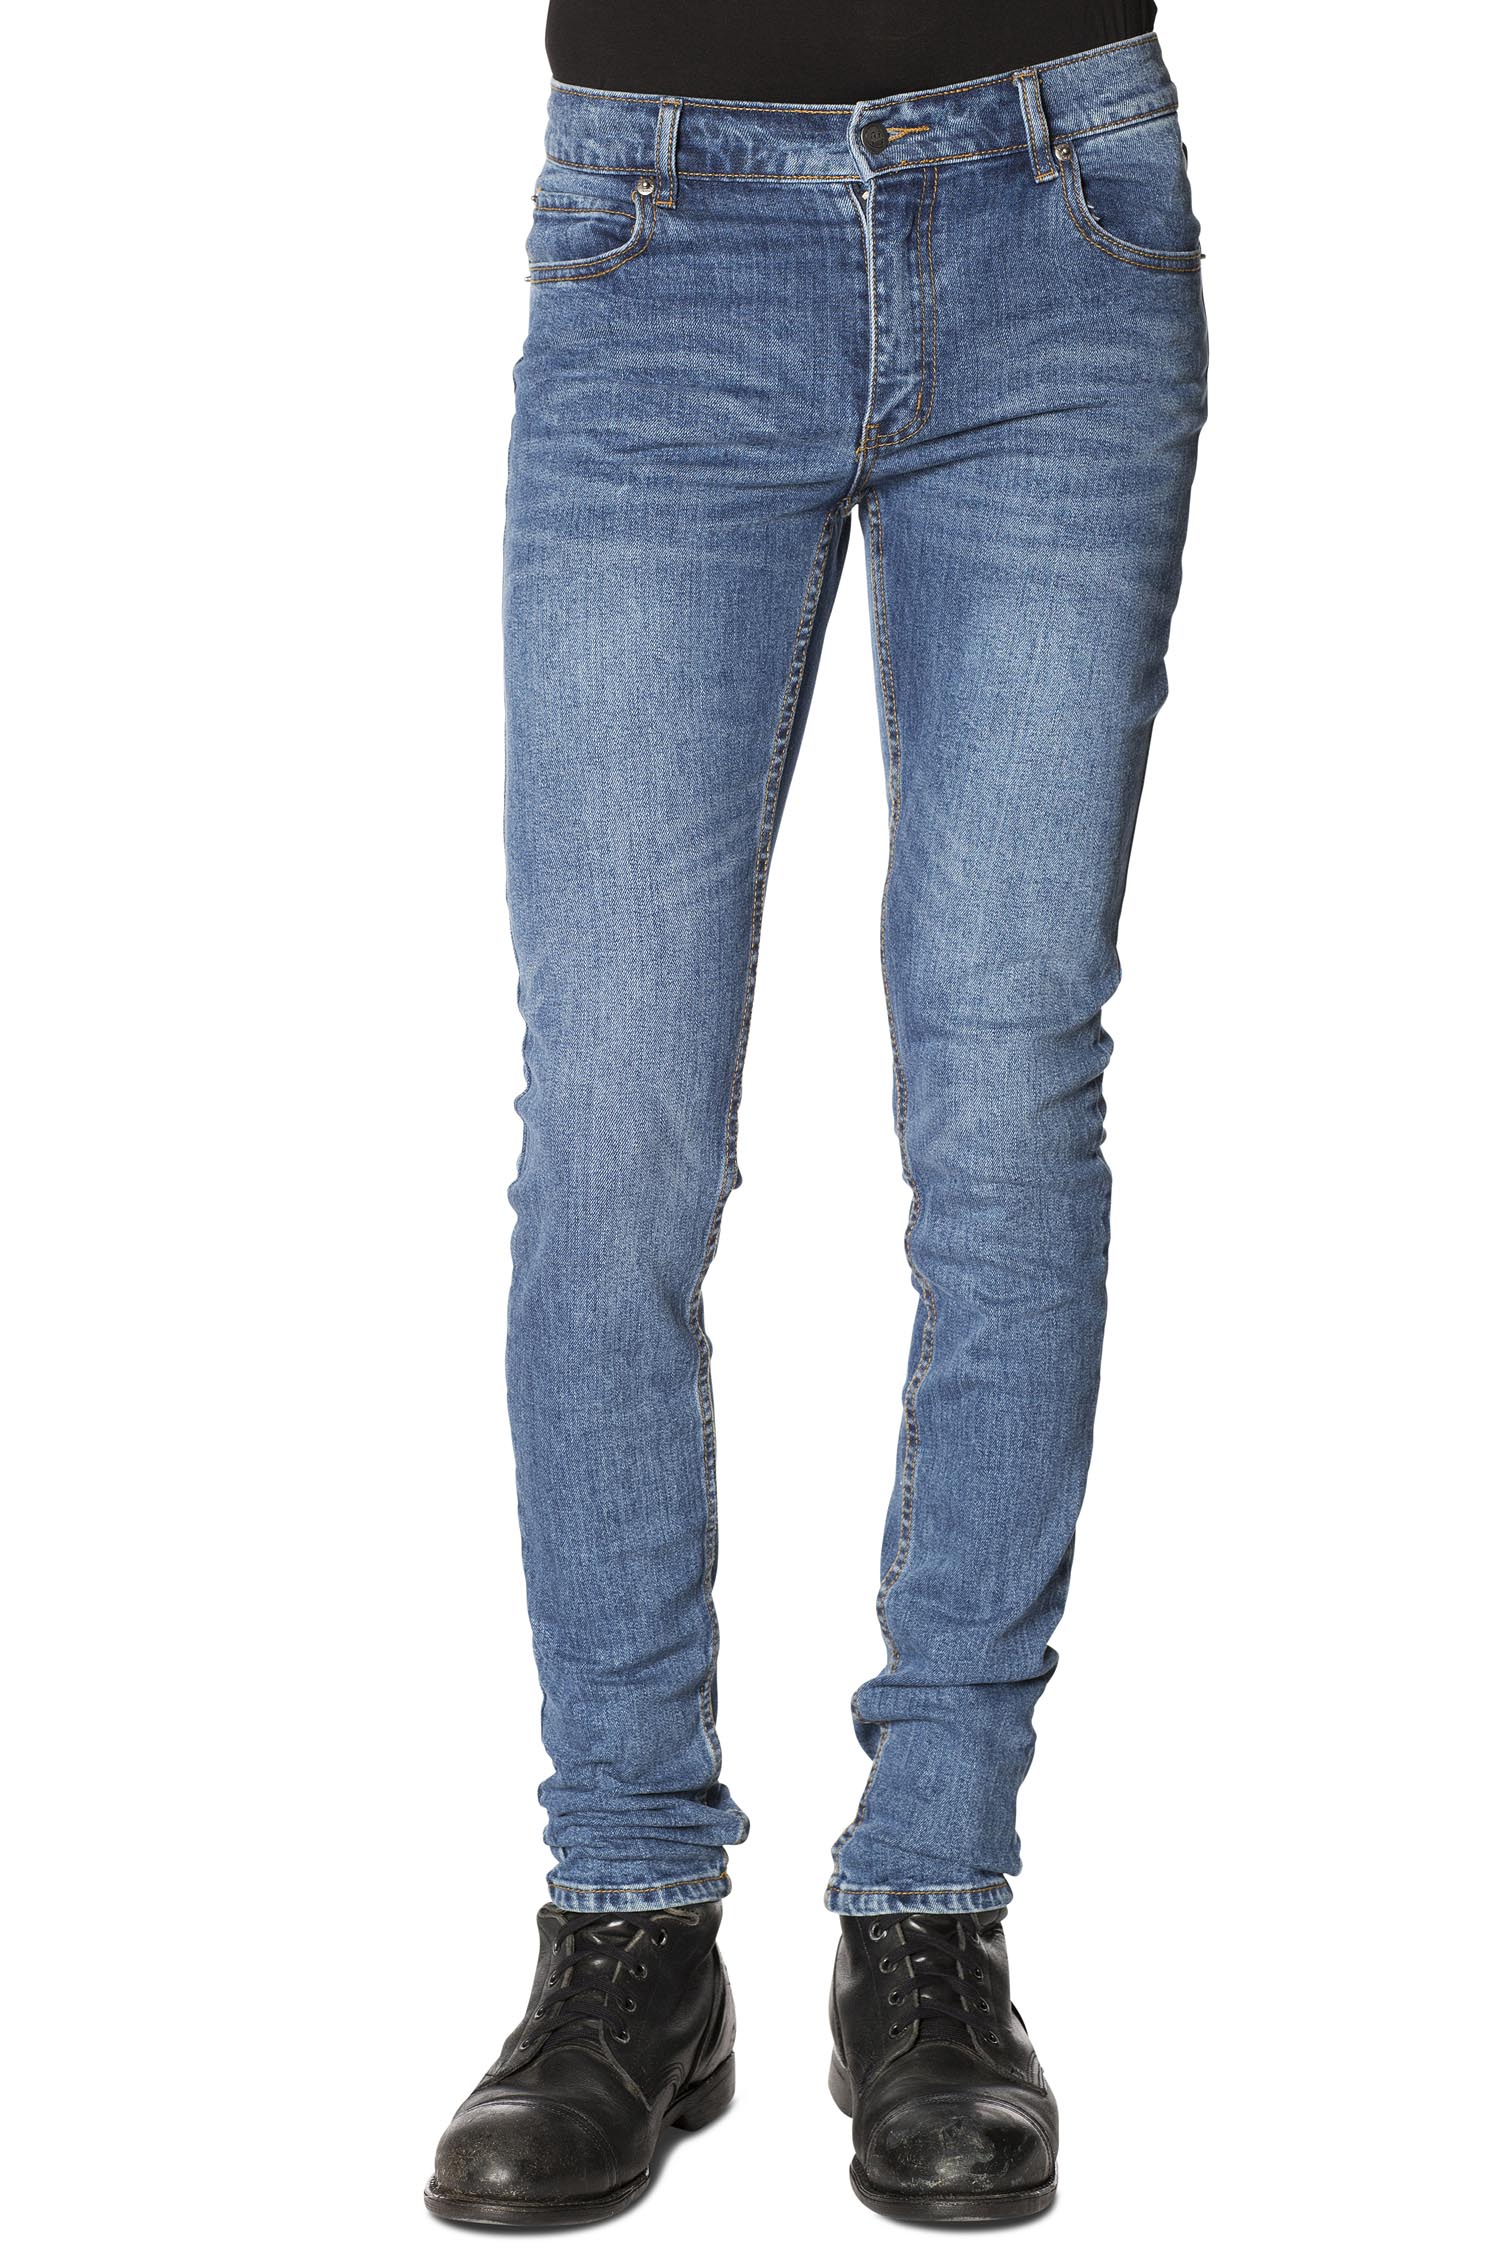 Grosir Celana Jeans Levis 03 Harga Murah Bagus Berkualitas